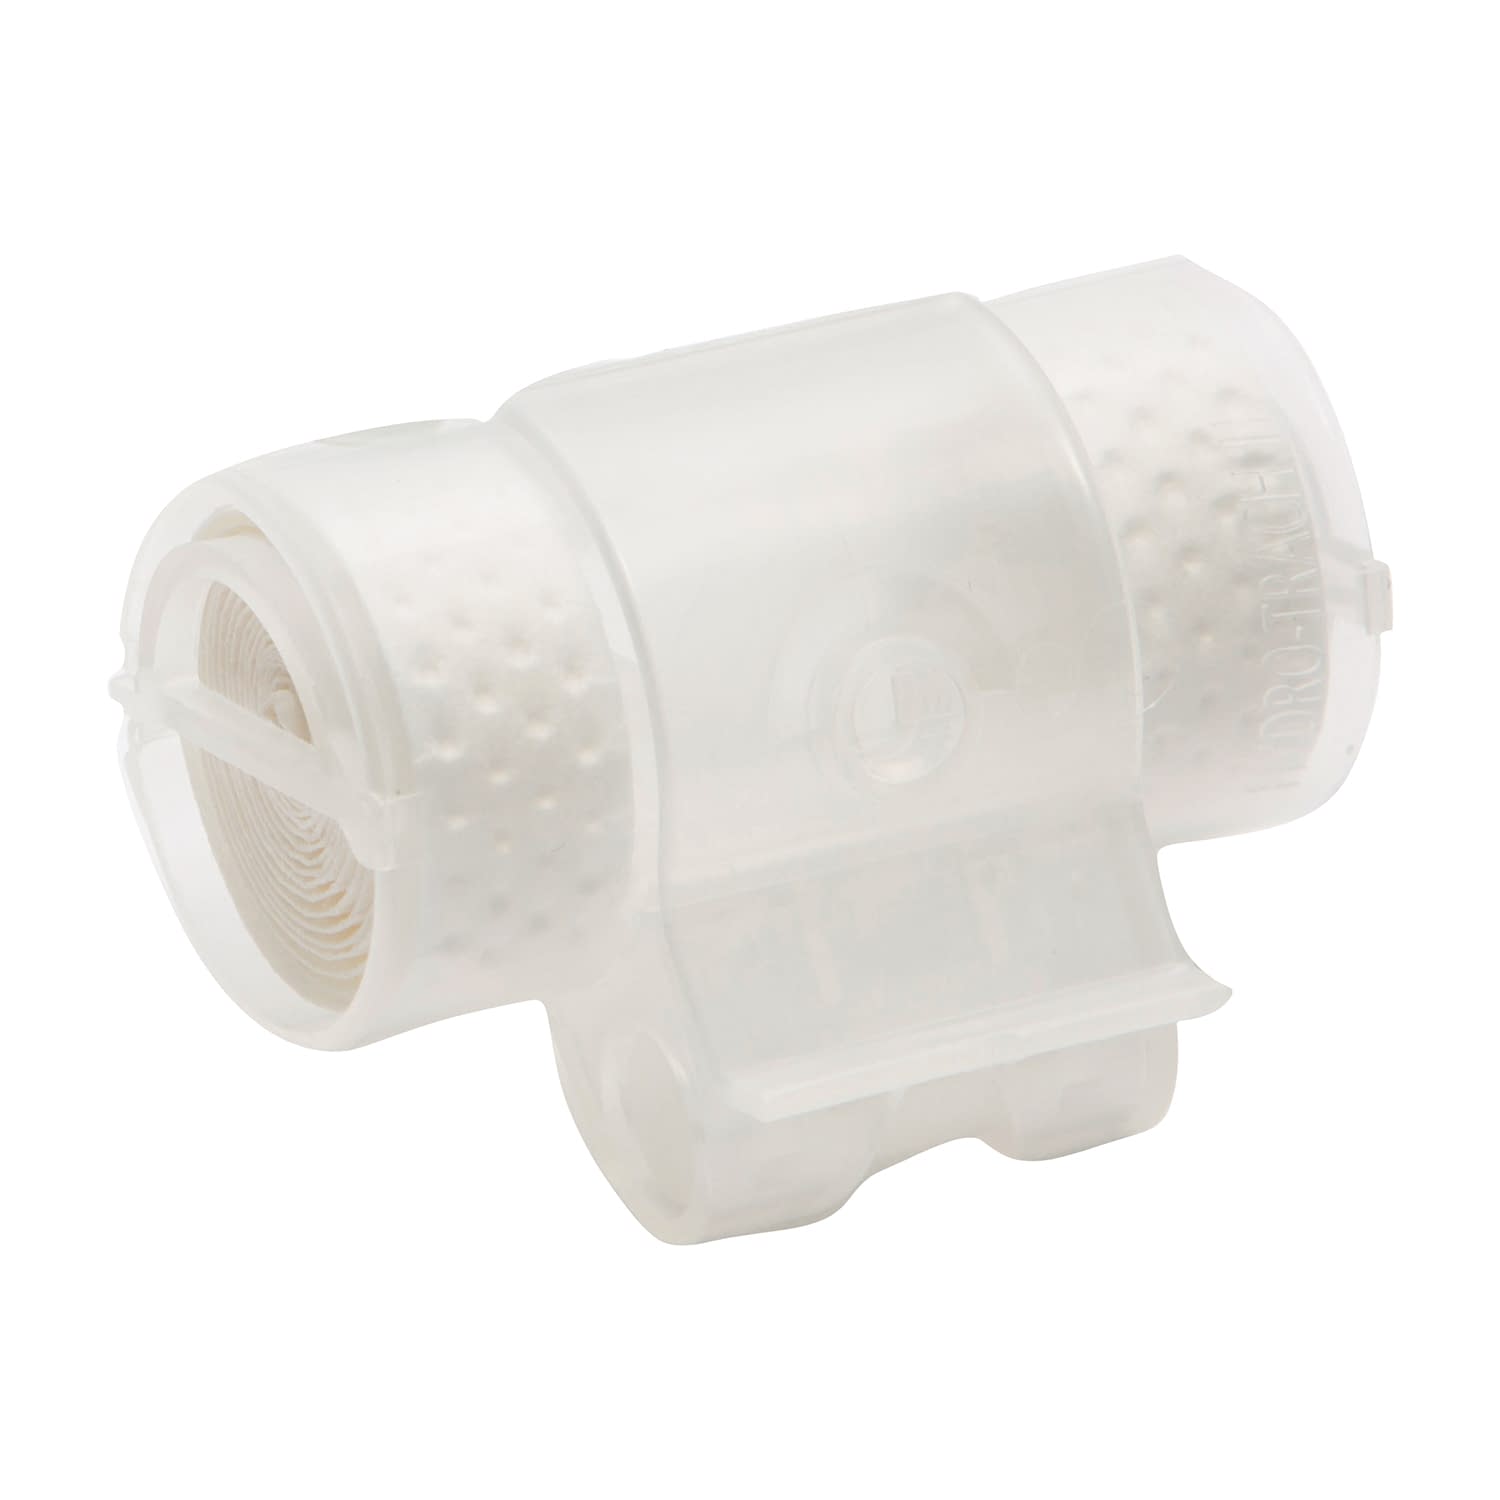 無料長期保証 気管切開用人工鼻 FJ-1168 - 治療機器